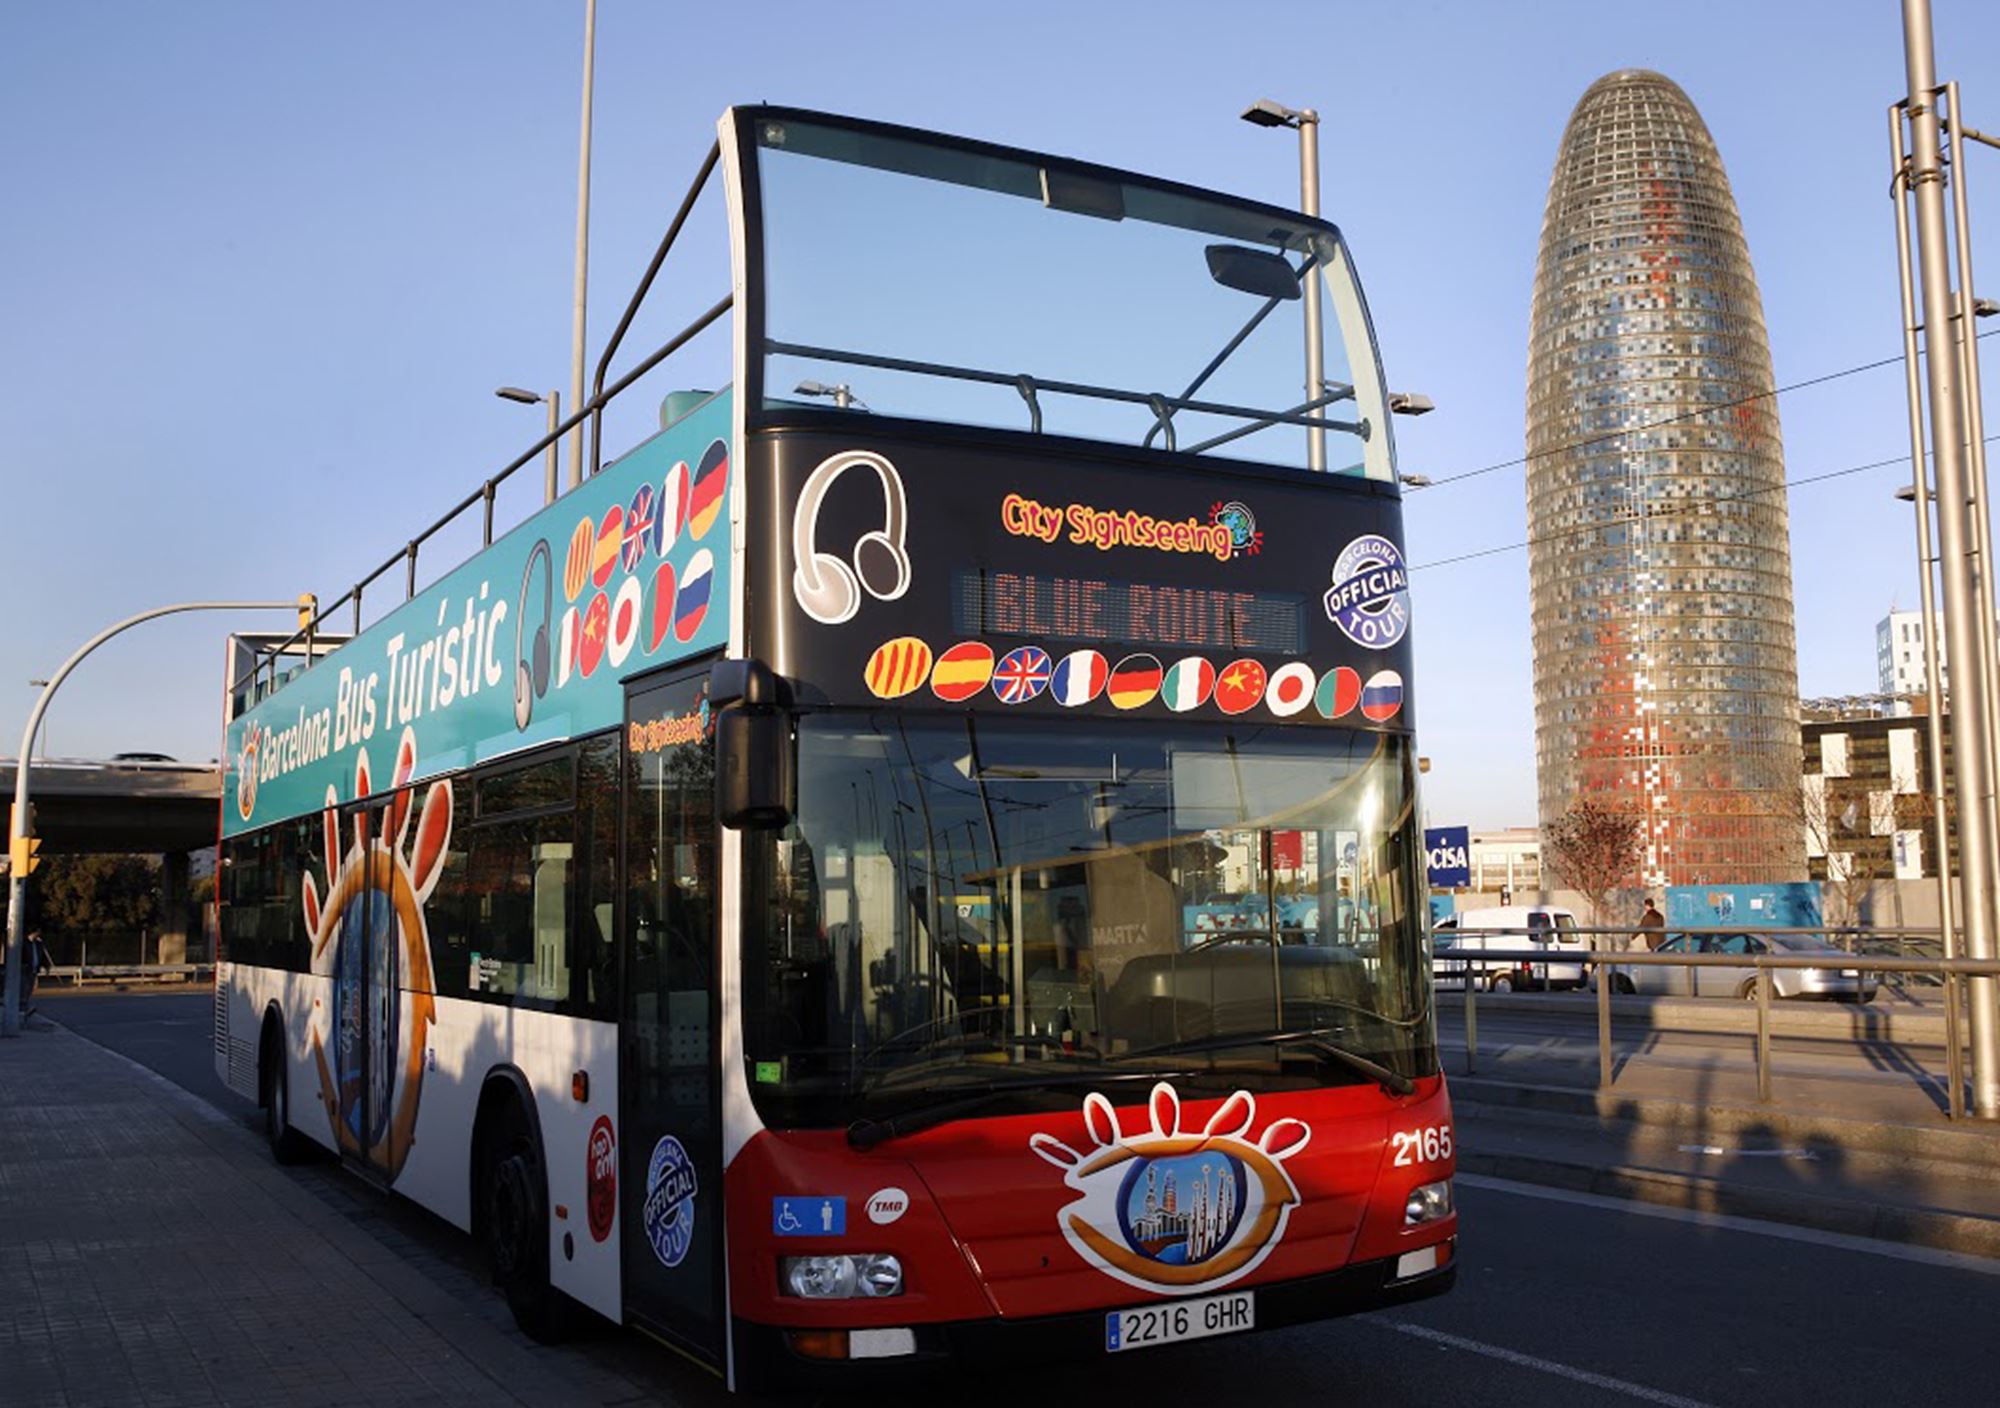 acheter réservations réserver visites guidées tours billets visiter Bus Touristique City Sightseeing Barcelona